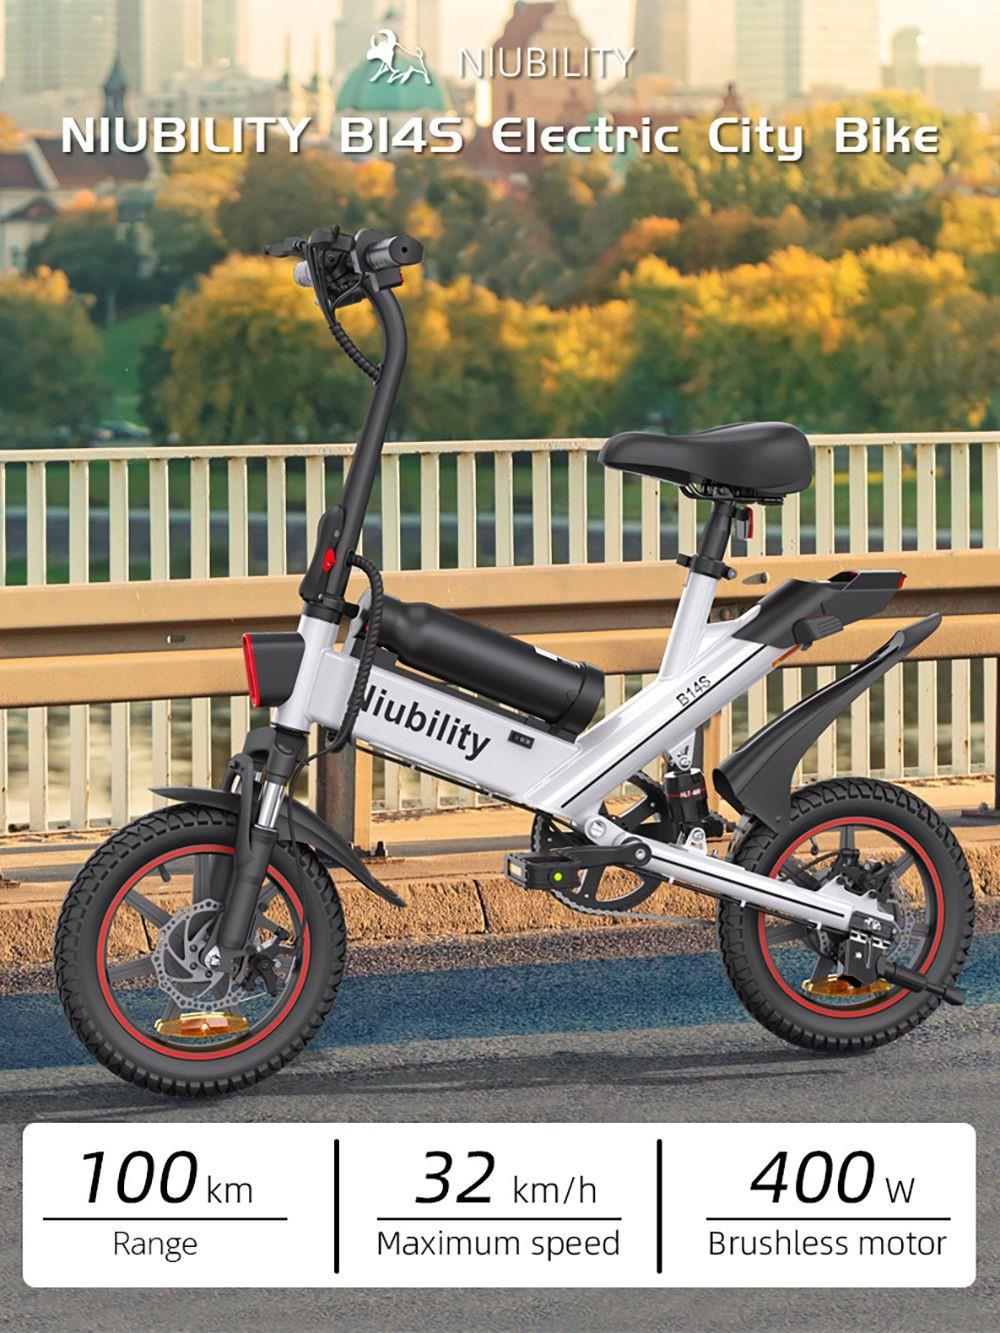 NIUBILITY B14S 14*2.125 inch banden elektrische fiets, 400W motor, 8.7Ah 6.4Ah dubbele batterij - Wit